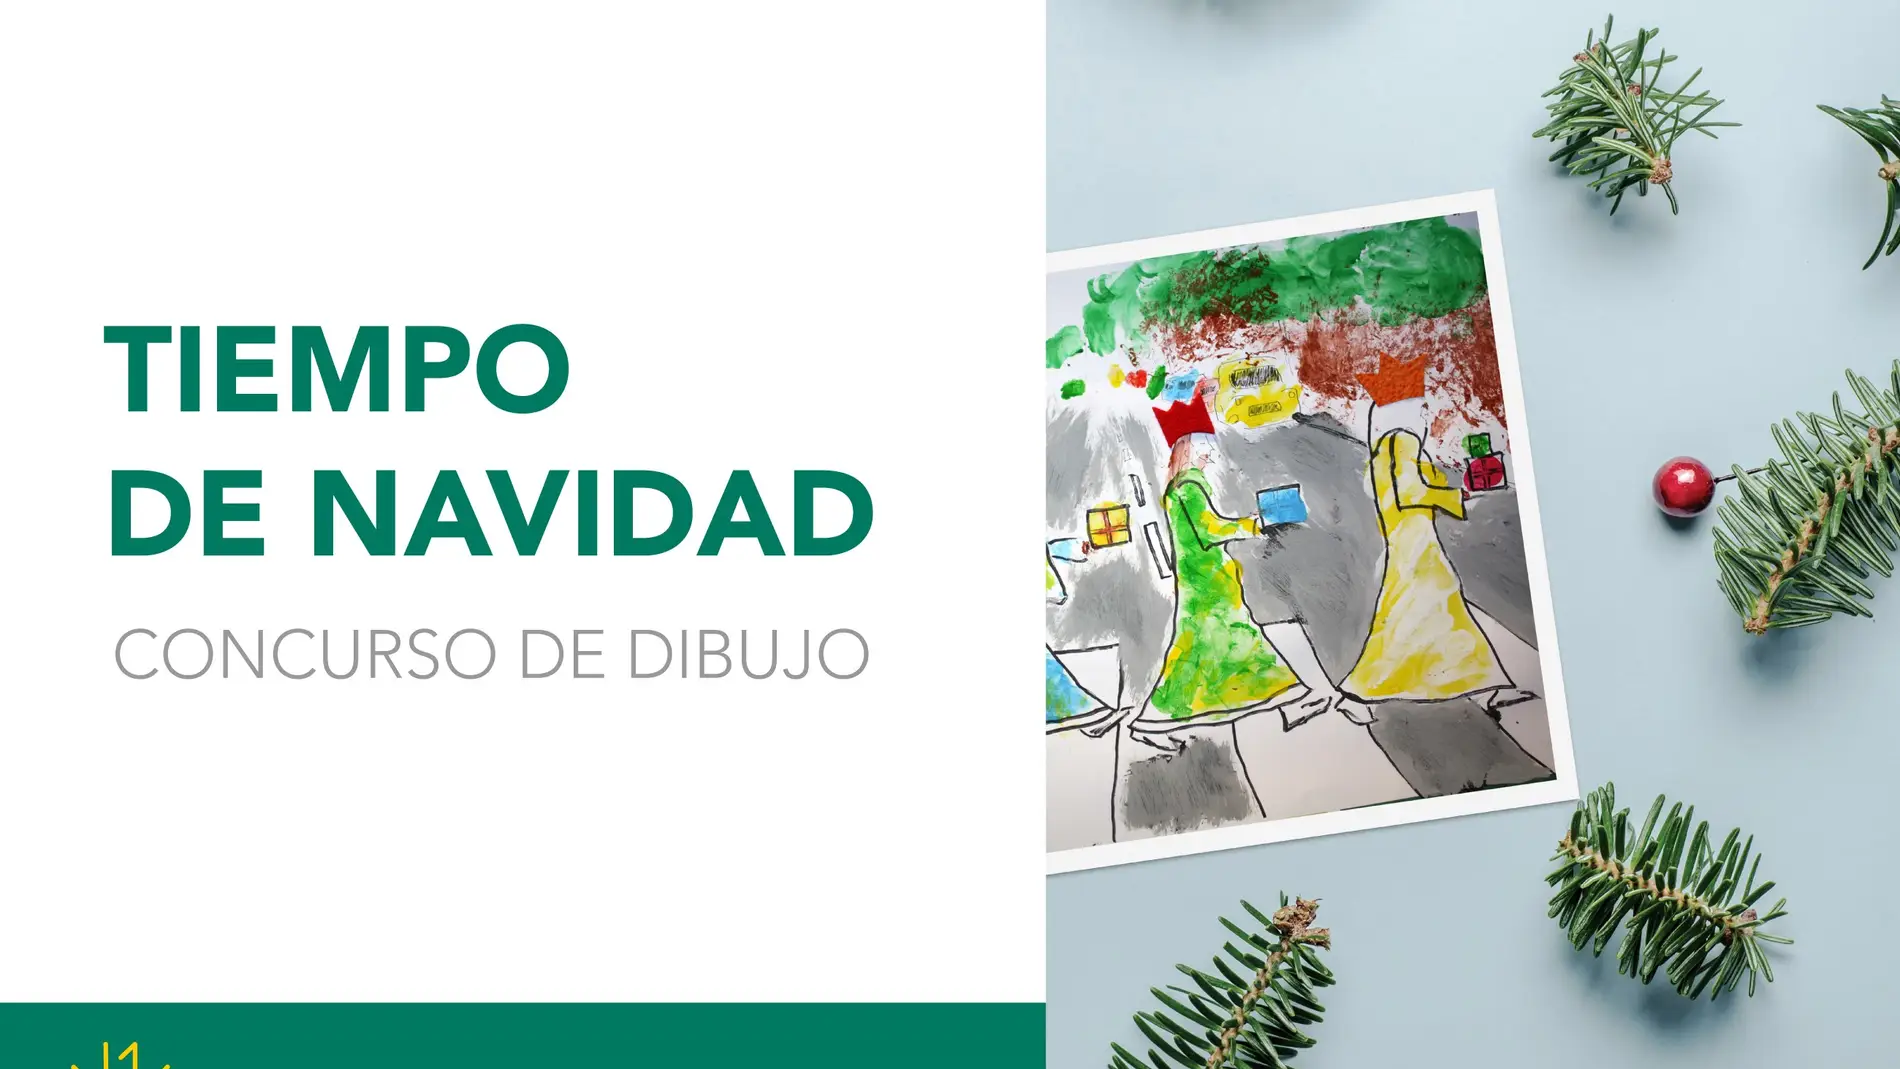 Fundación Eurocaja Rural convoca una nueva edición del certamen de dibujo "Tiempo de Navidad"